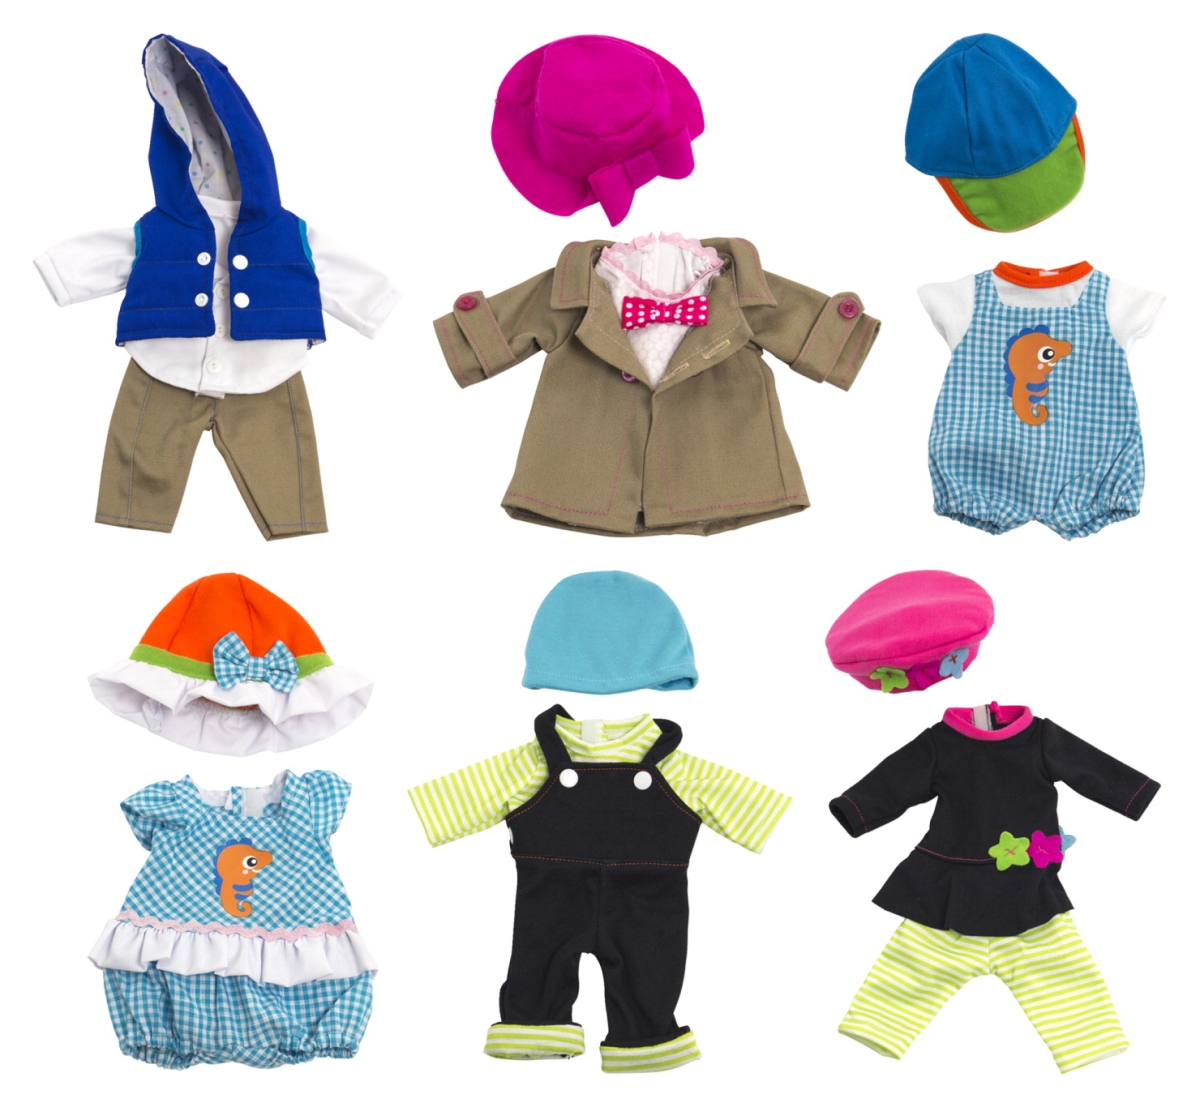 2006301 12.63 In. Newborn Doll All-season Fashion Clothing - Set Of 6